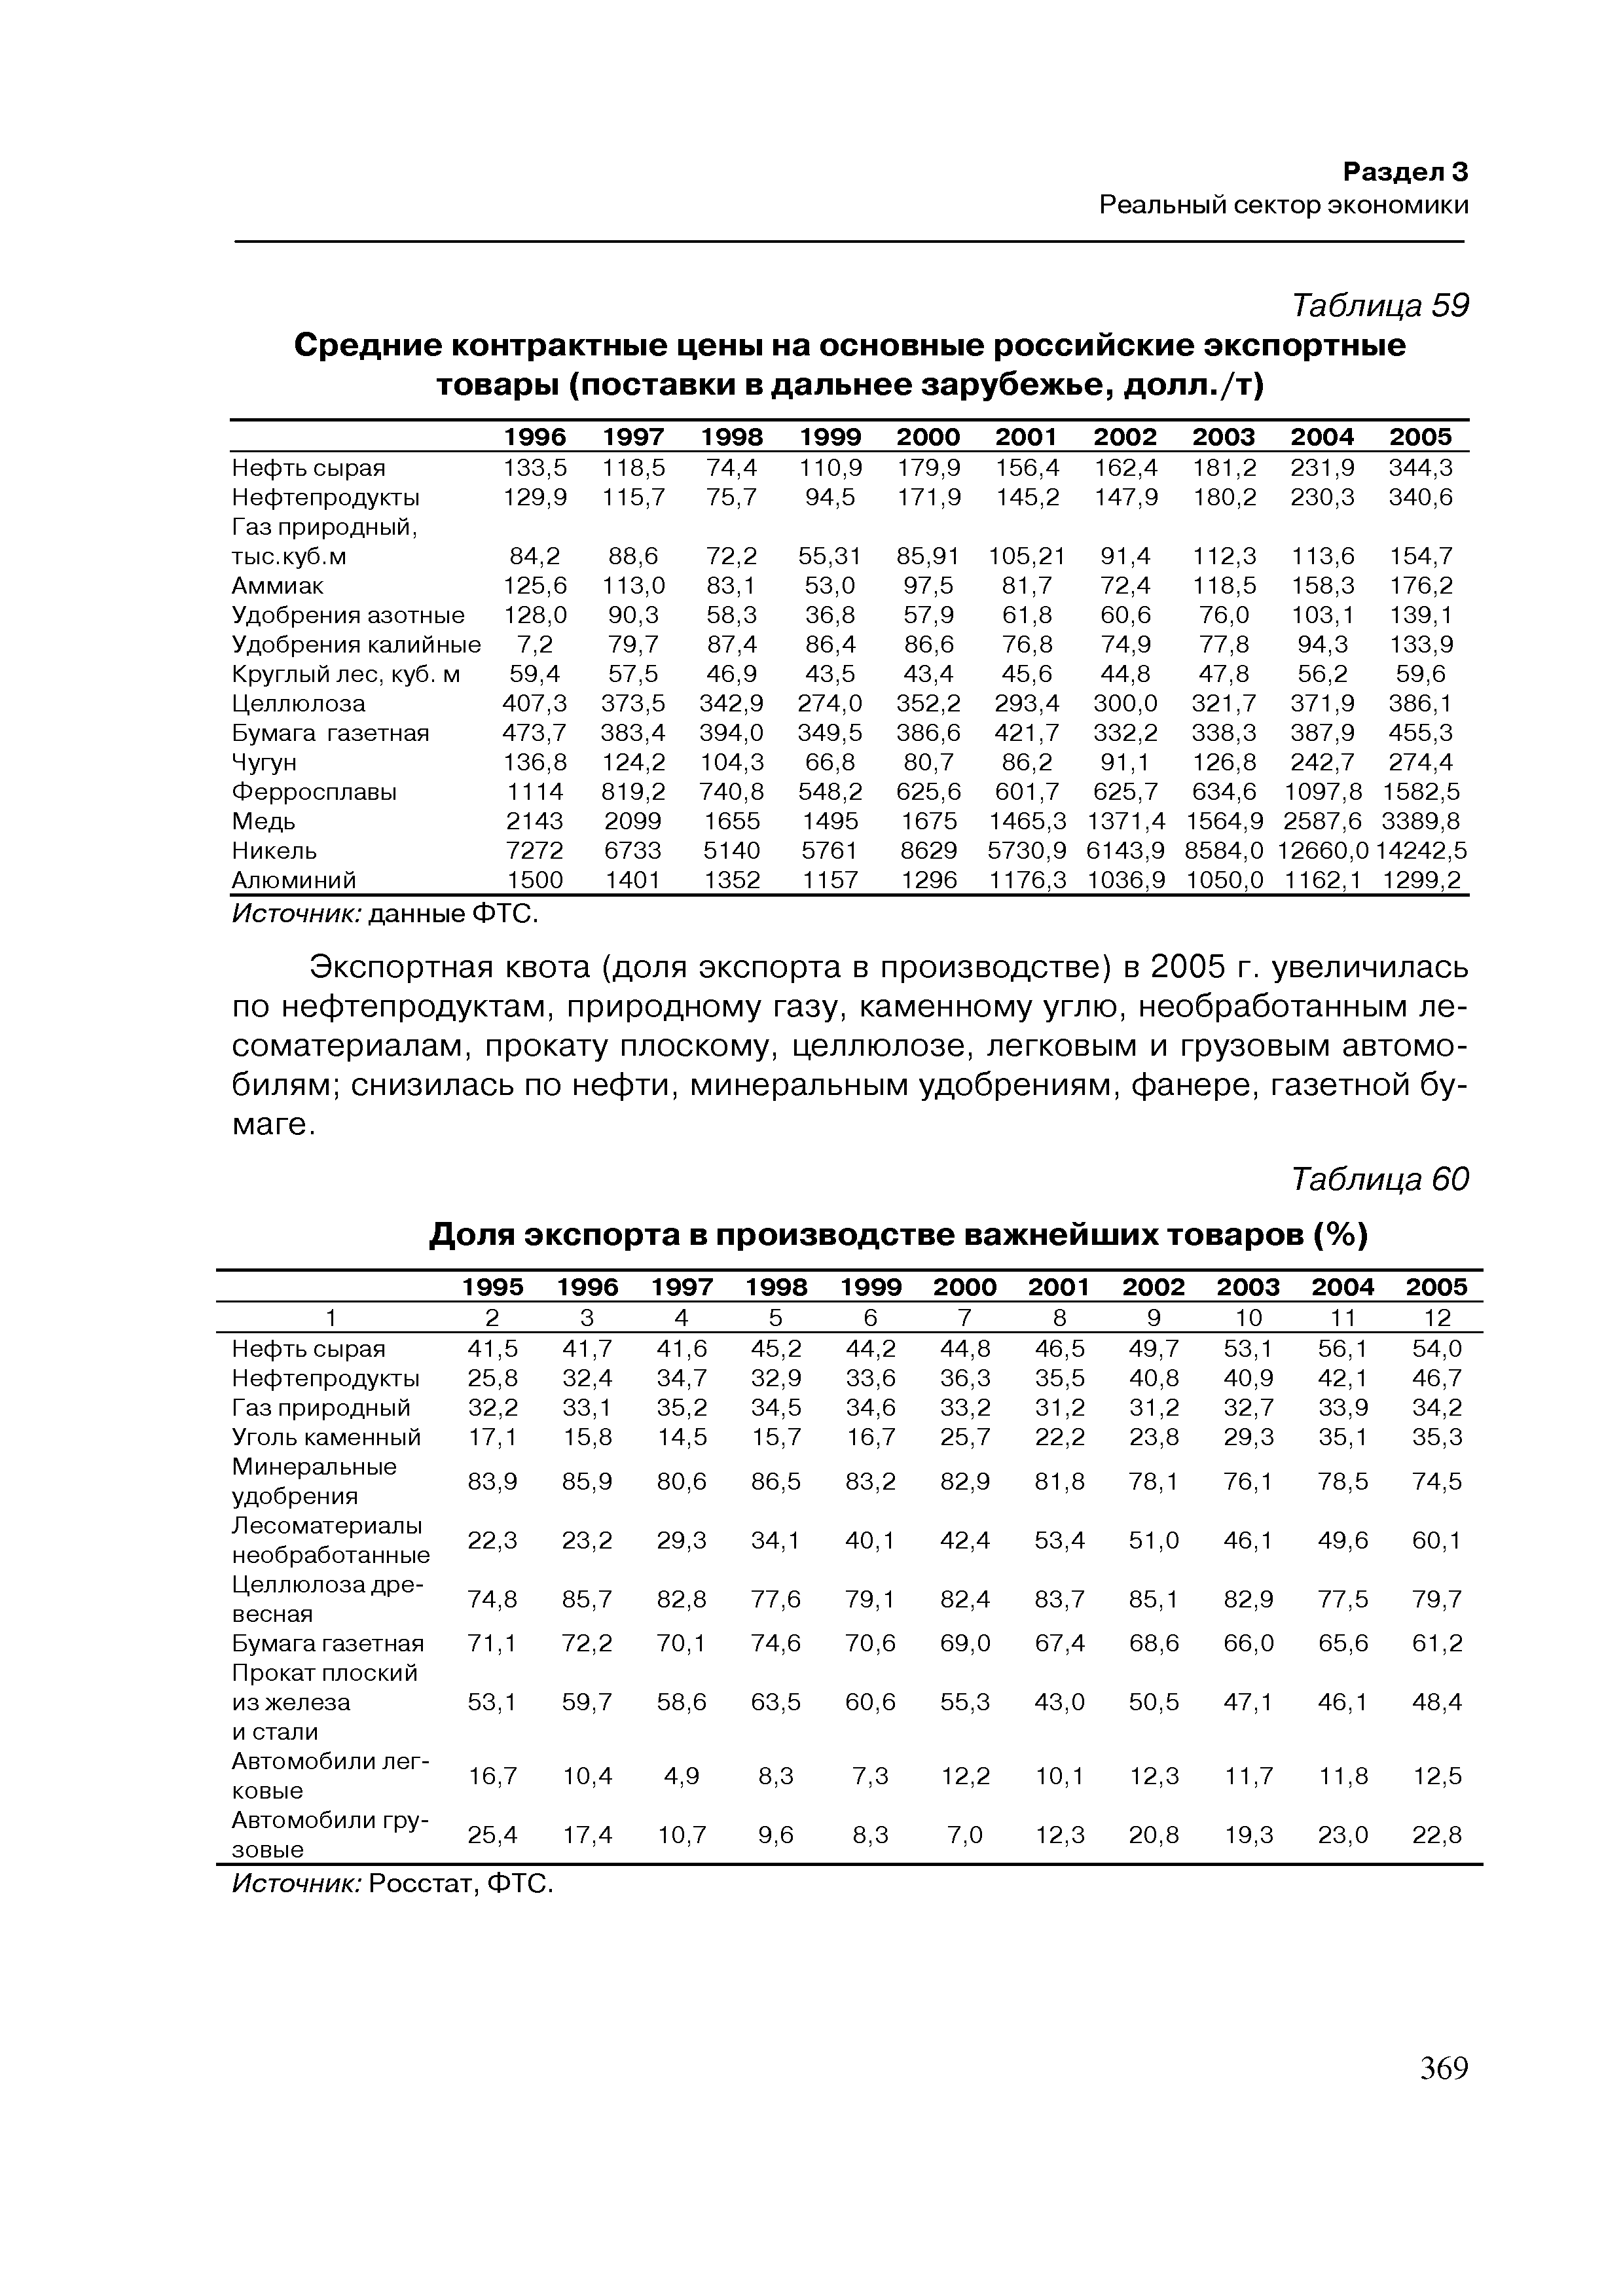 Таблица 60 Доля экспорта в производстве важнейших товаров (%)
